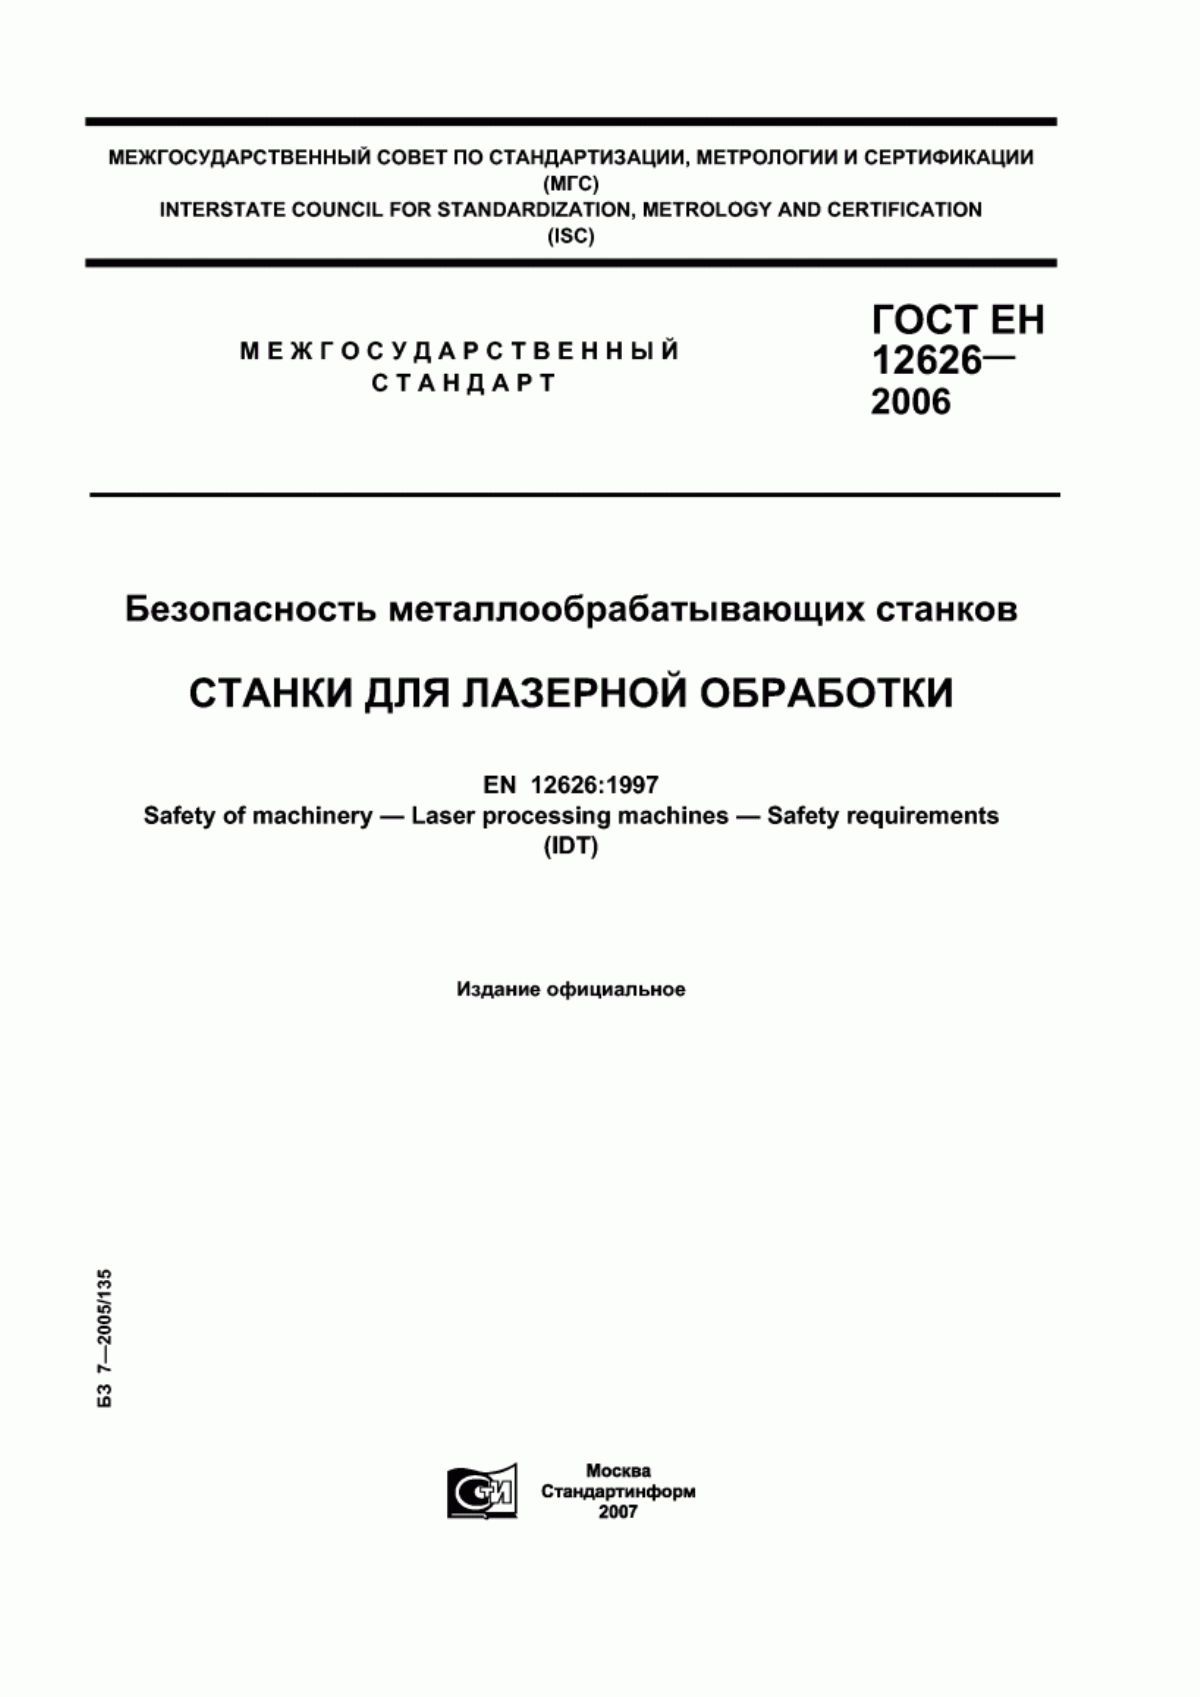 ГОСТ ЕН 12626-2006 Безопасность металлообрабатывающих станков. Станки для лазерной обработки